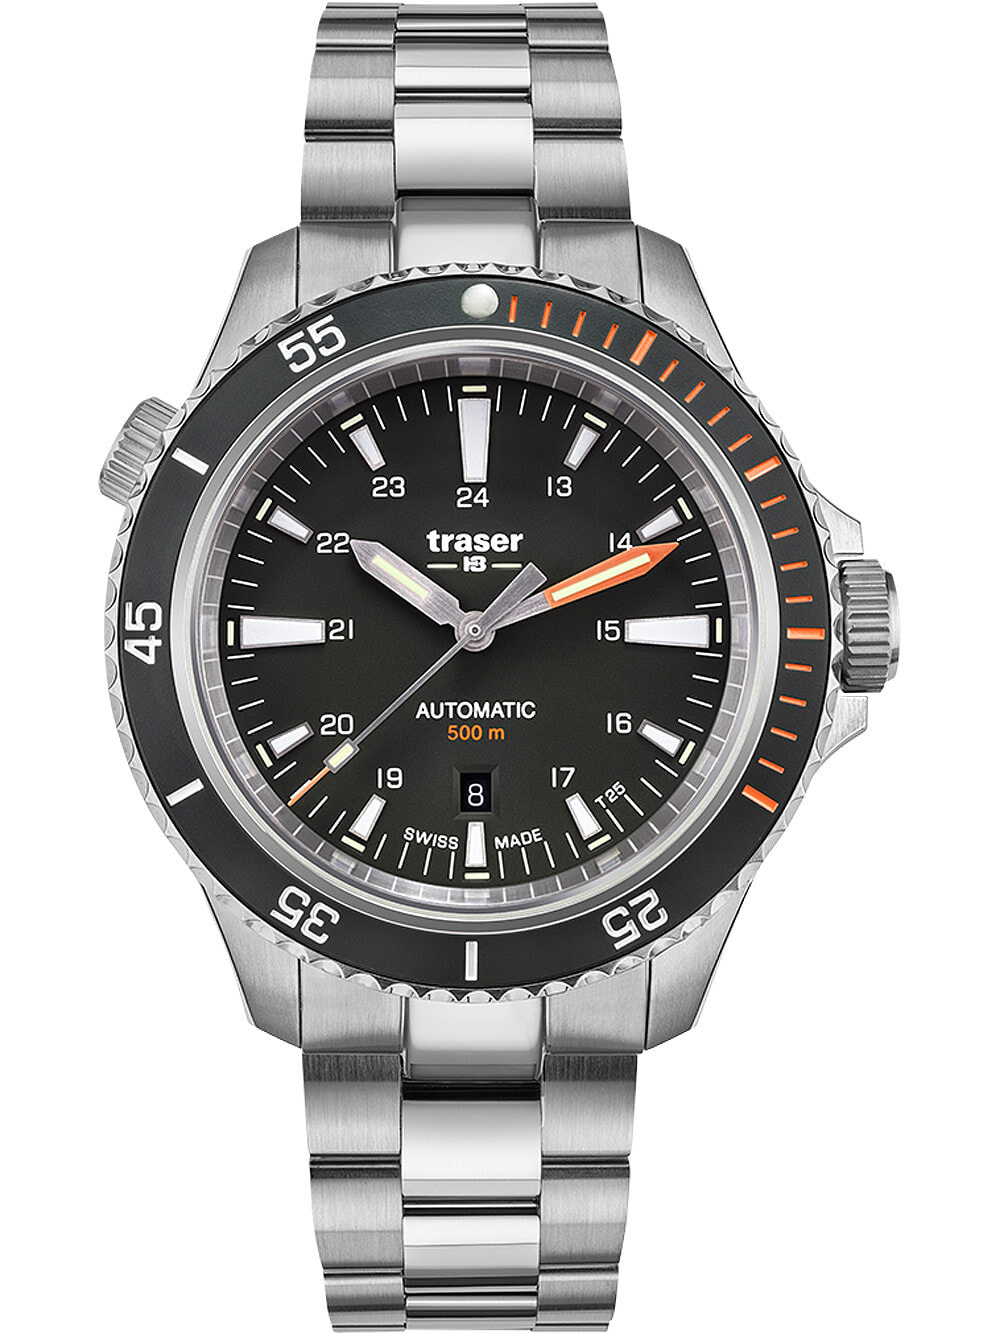 Мужские наручные часы с серебряным браслетом Traser H3 110321 P67 Diver Automatik Black Special Set 46mm 50ATM